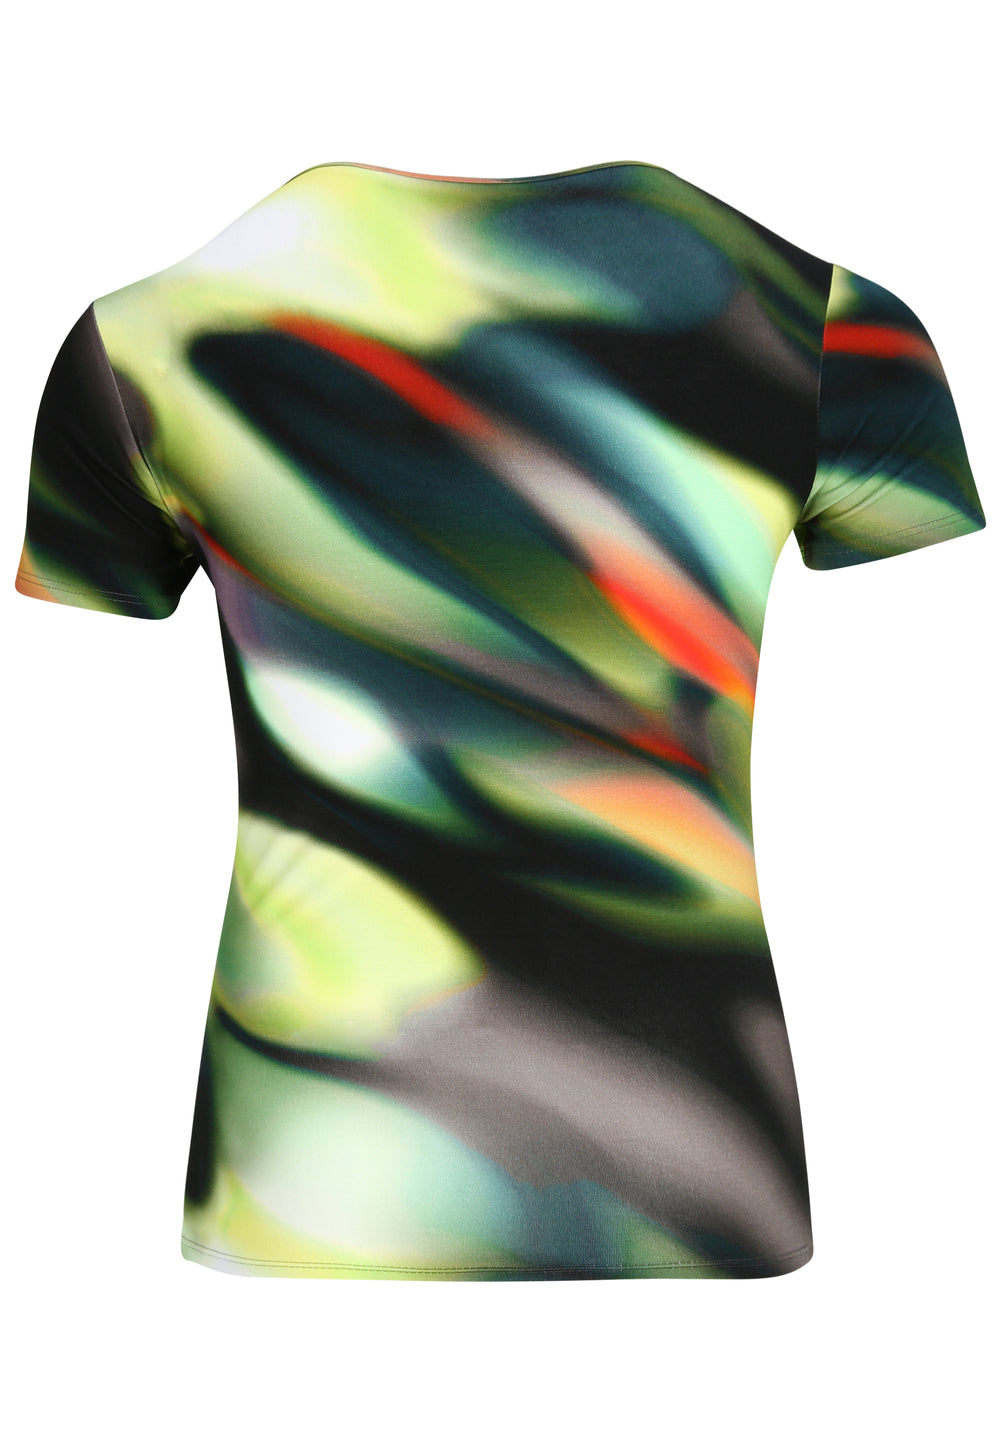 kleurig degrade t-shirt - doris streich - 262320-78 - grote maten - dameskleding - kledingwinkel - herent - leuven